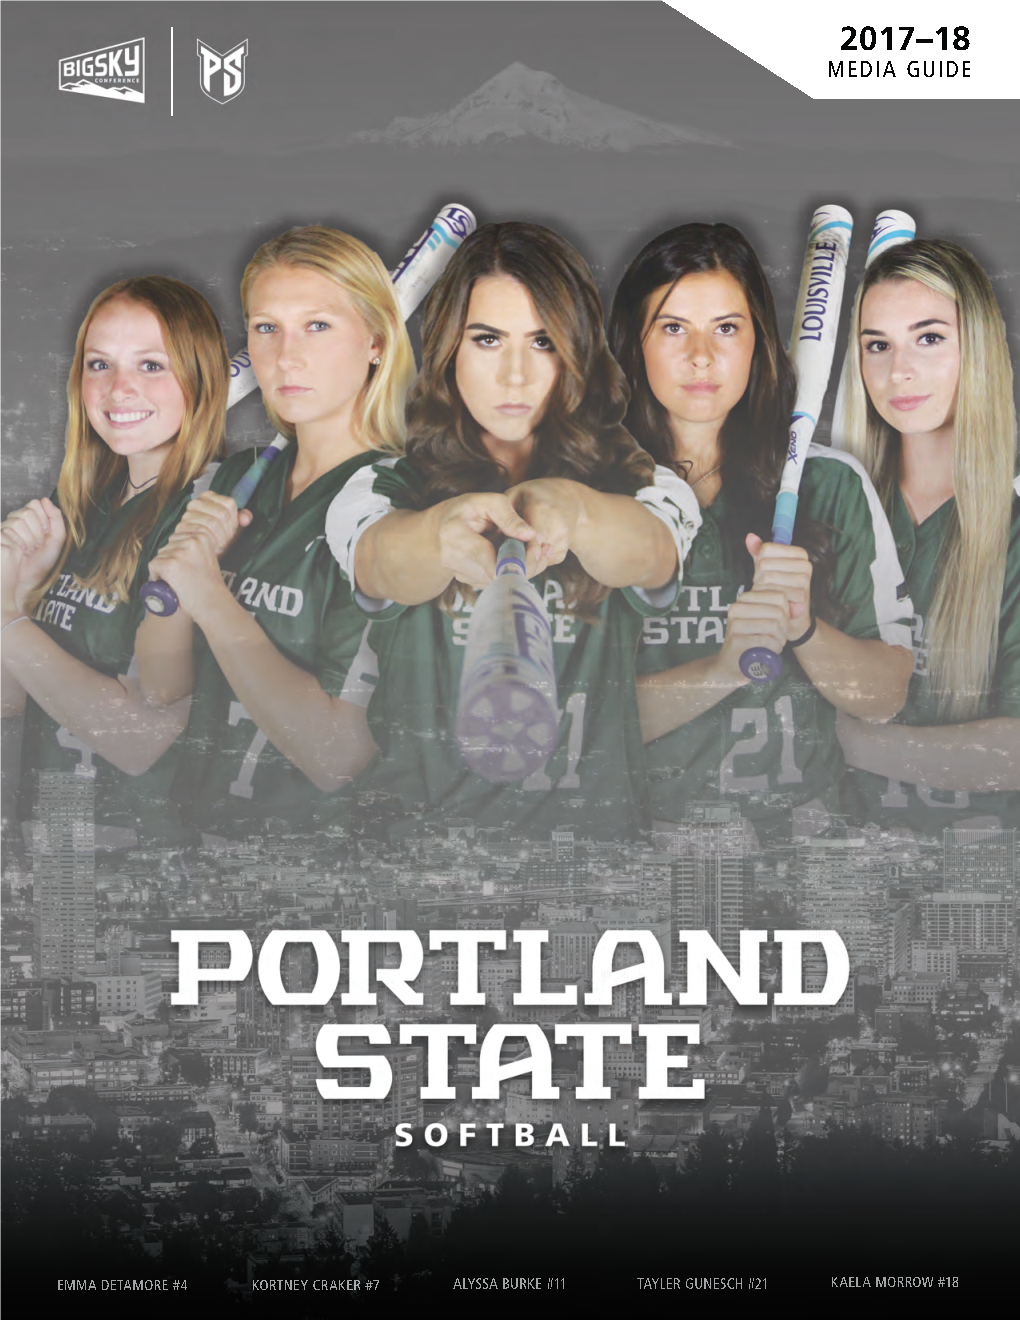 Portland State Softball State Portland 25 26 27 17 17 17 18 19 19 20 21 21 21 22 22 22 23 23 23 23 24 24 24 25